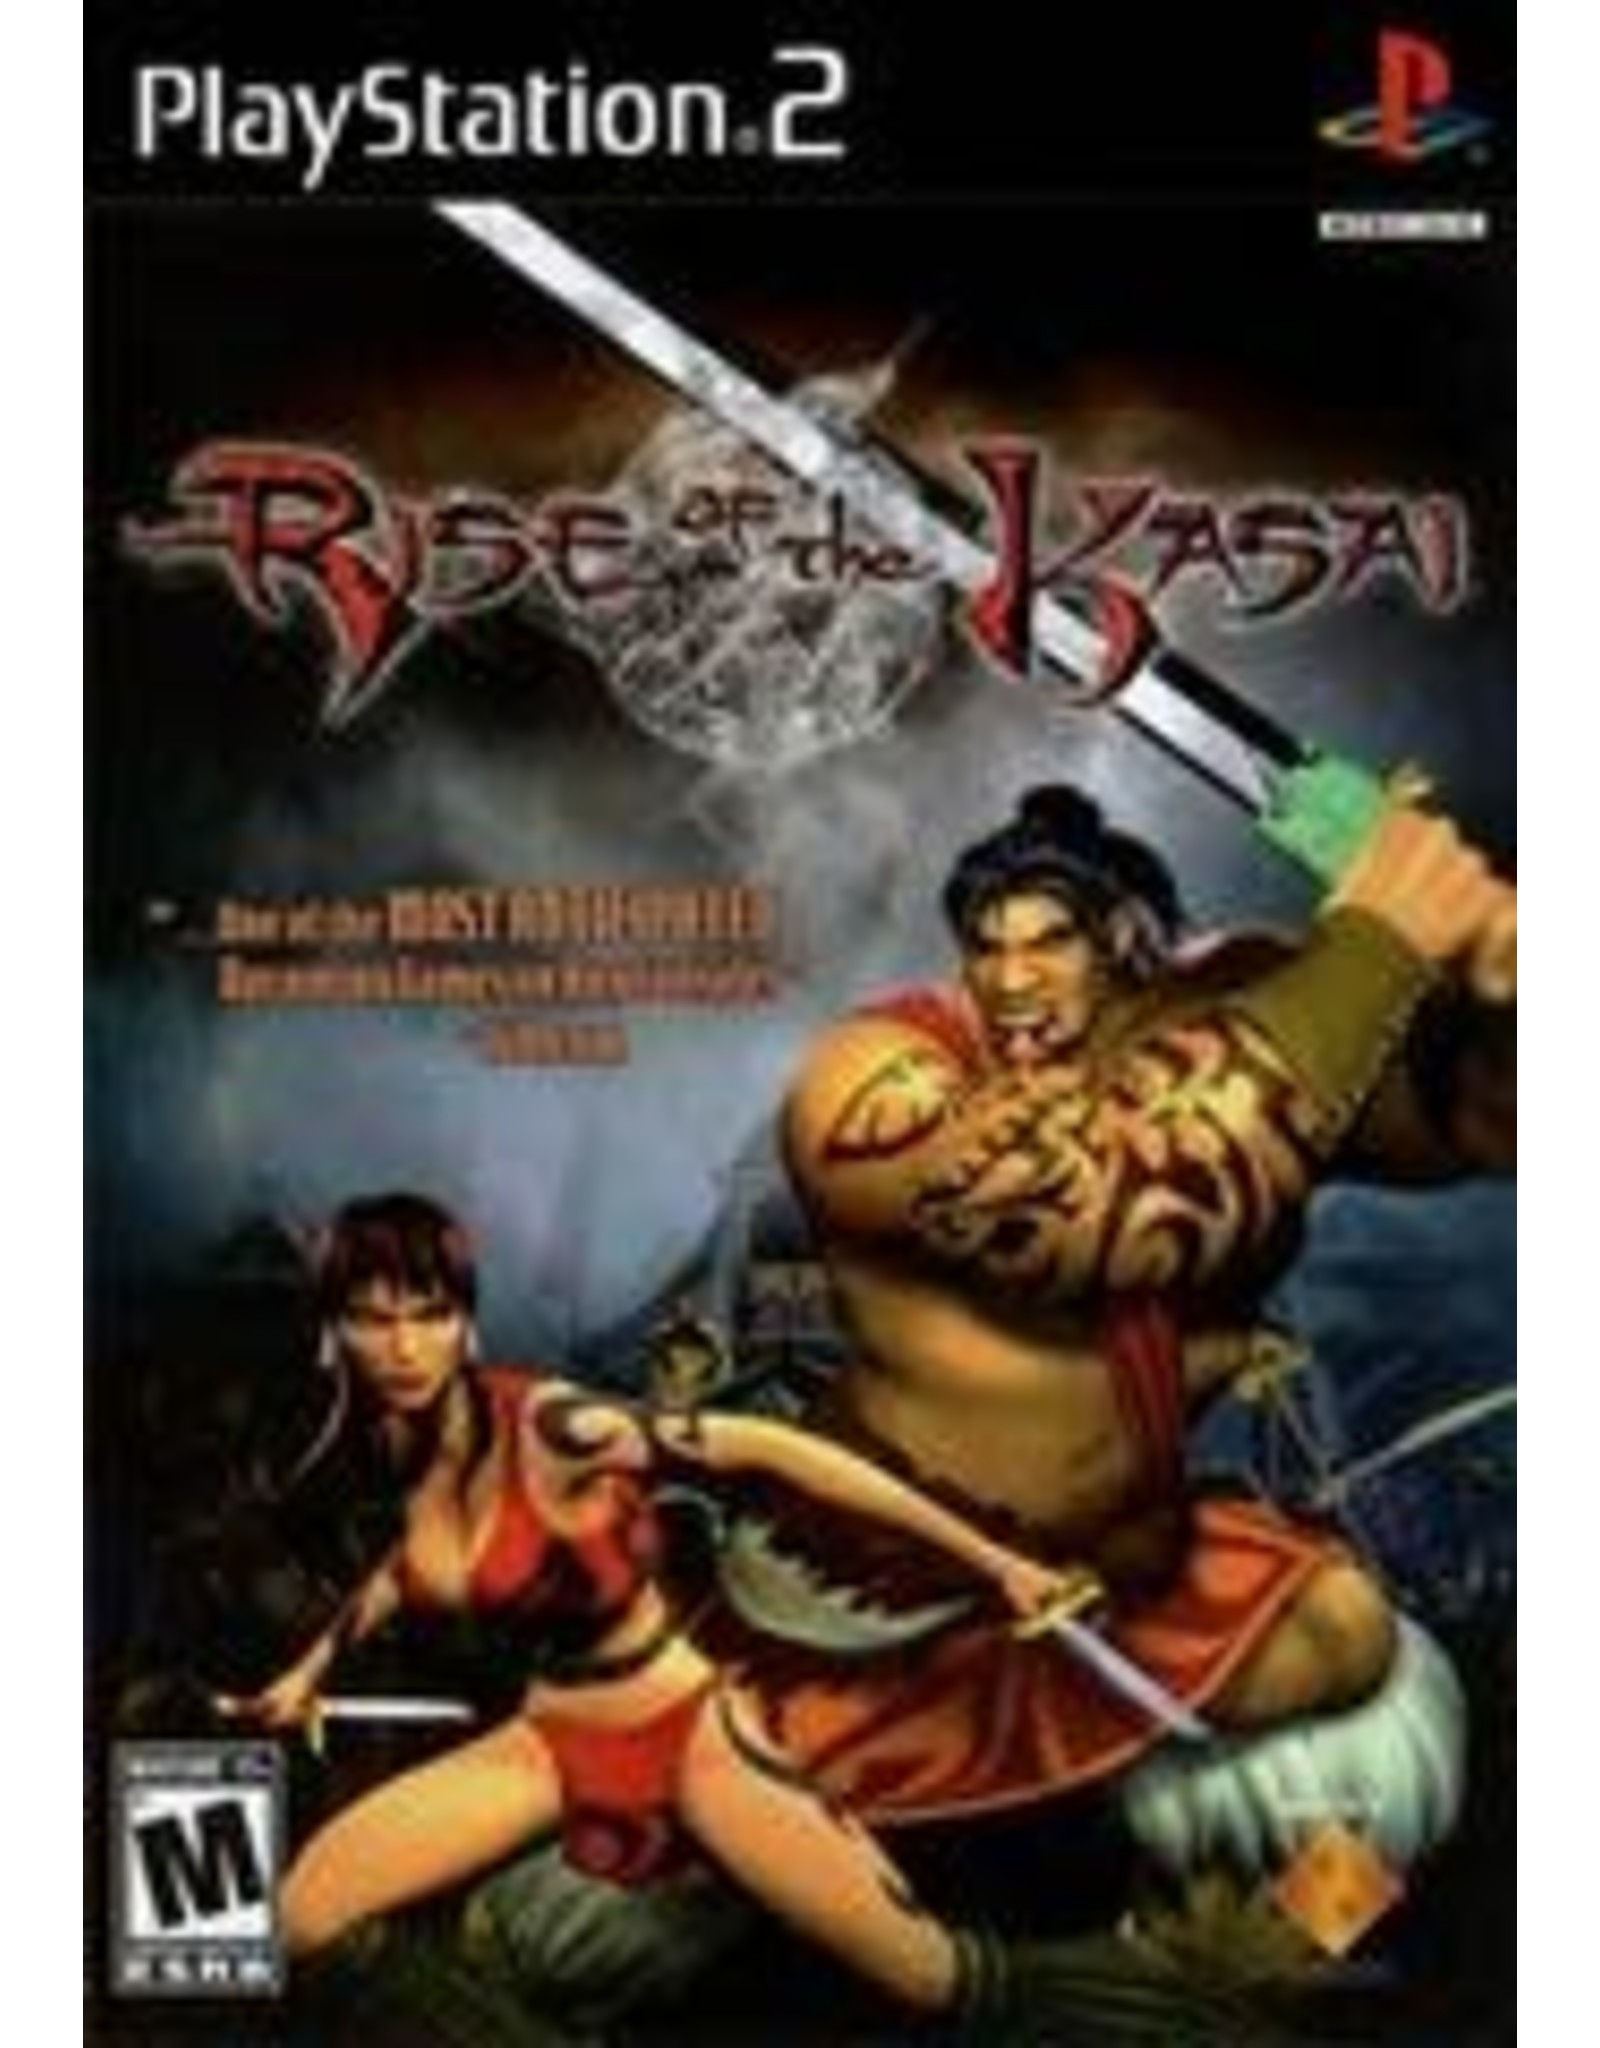 Playstation 2 Rise of the Kasai (No Manual)